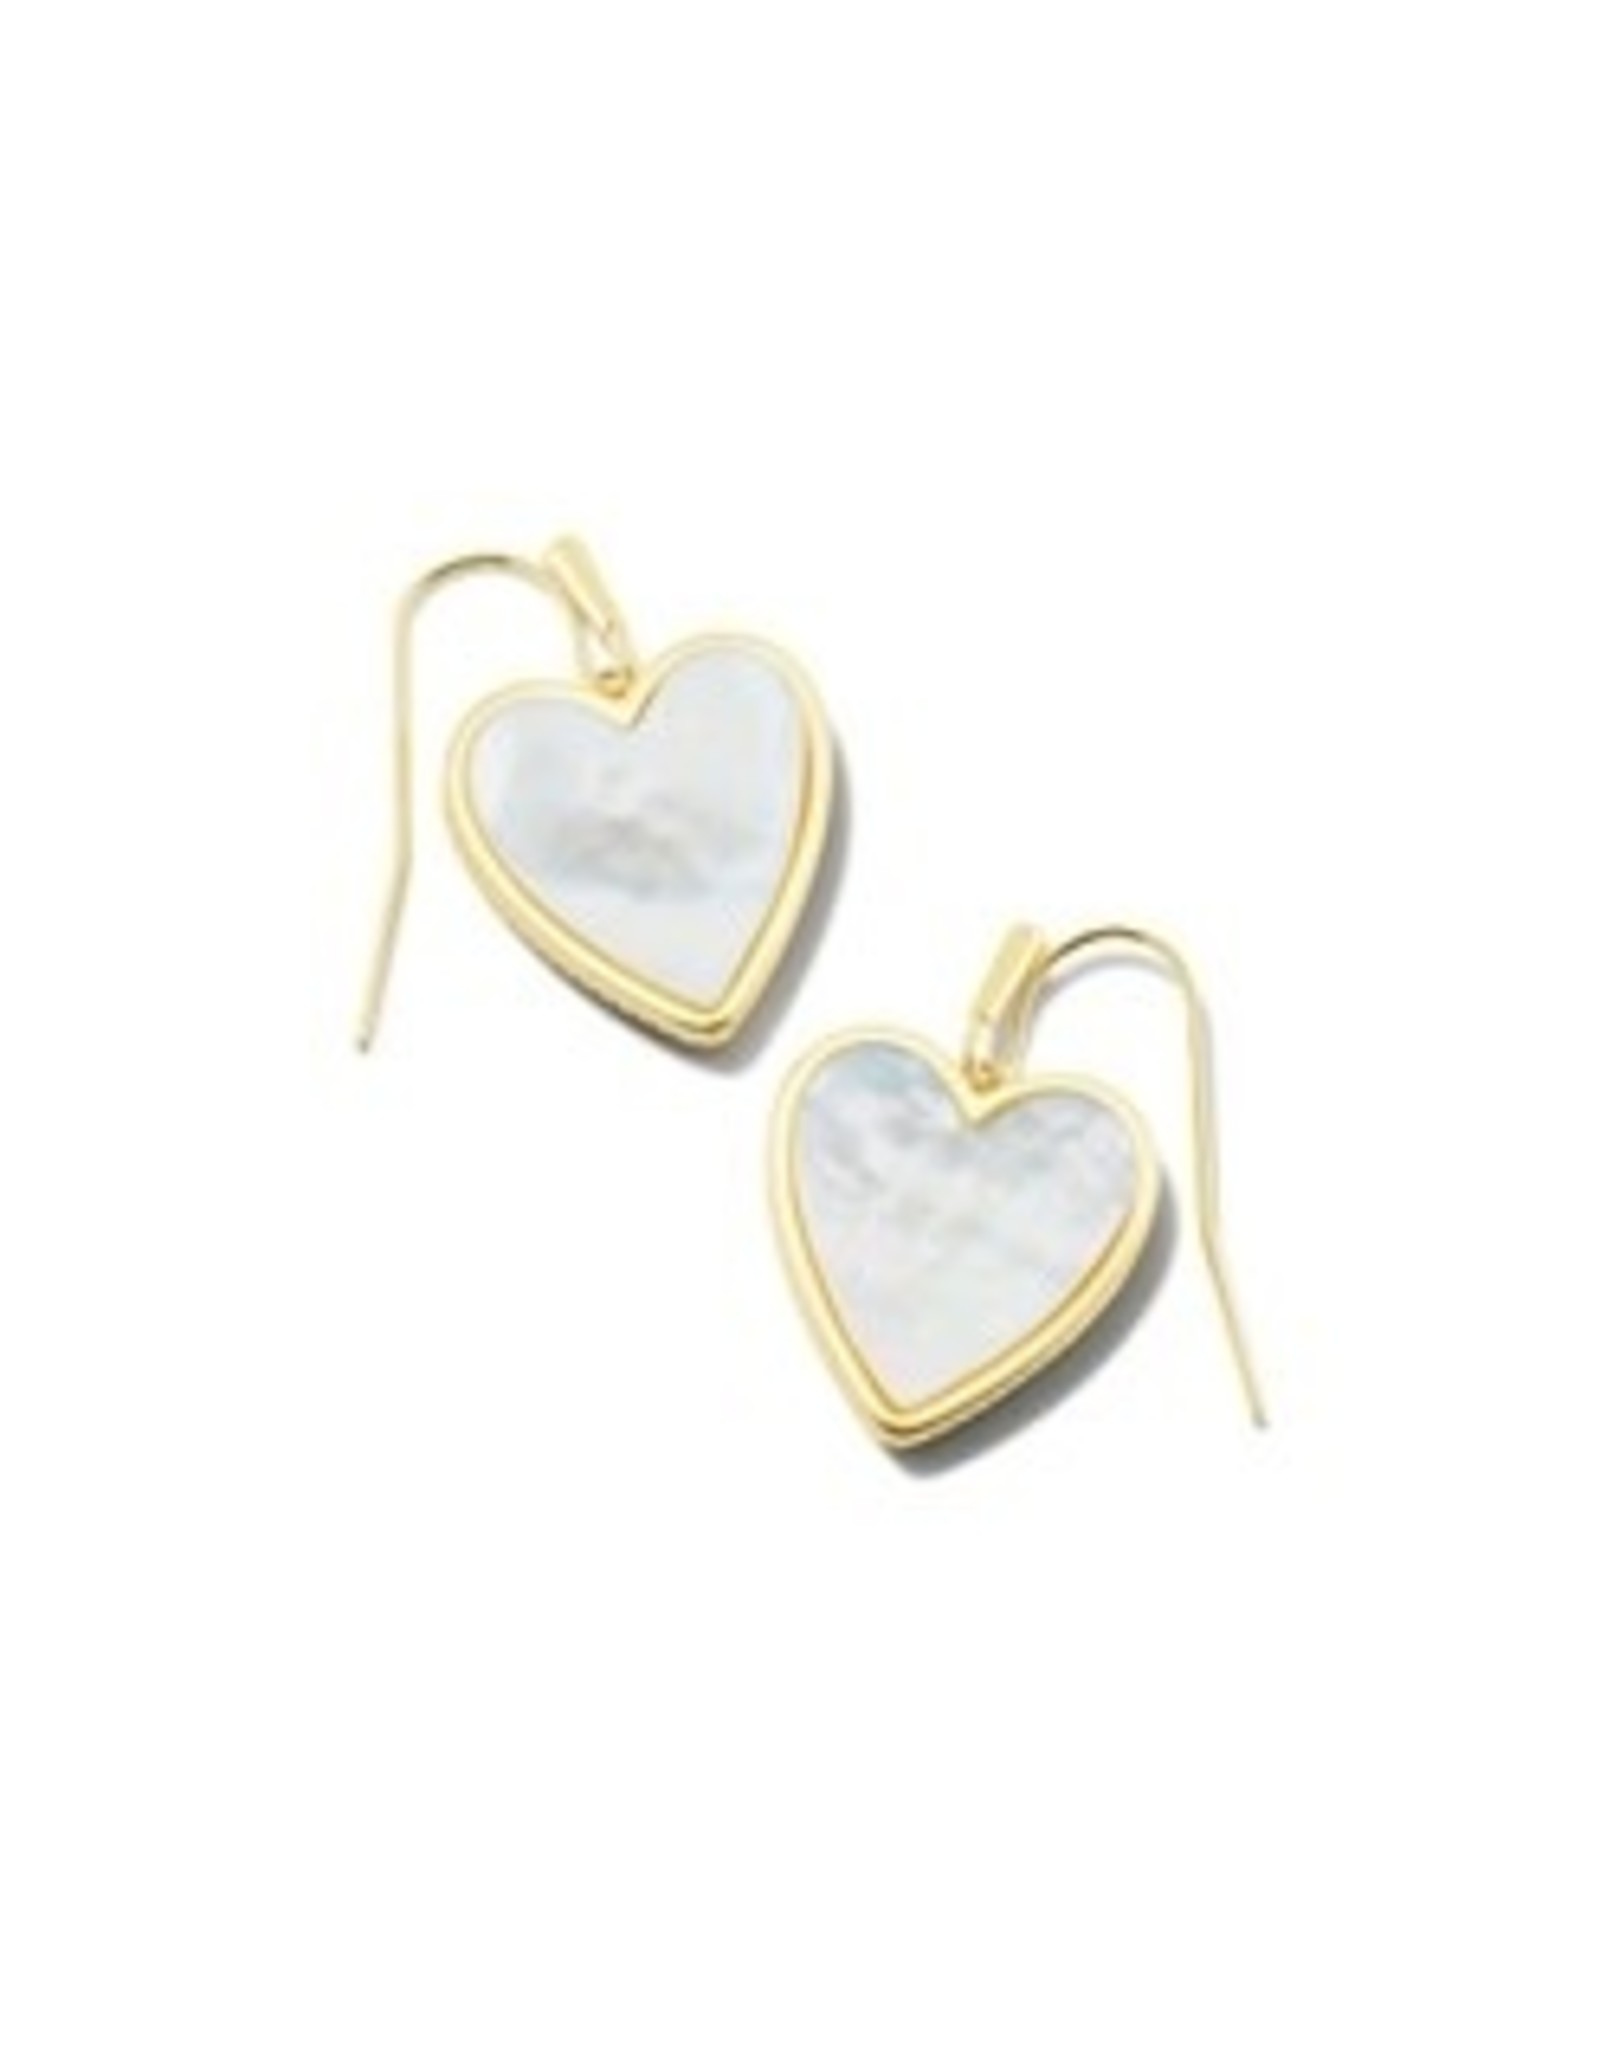 Kendra Scott Heart Drop Earrings Gold/Ivory MOP